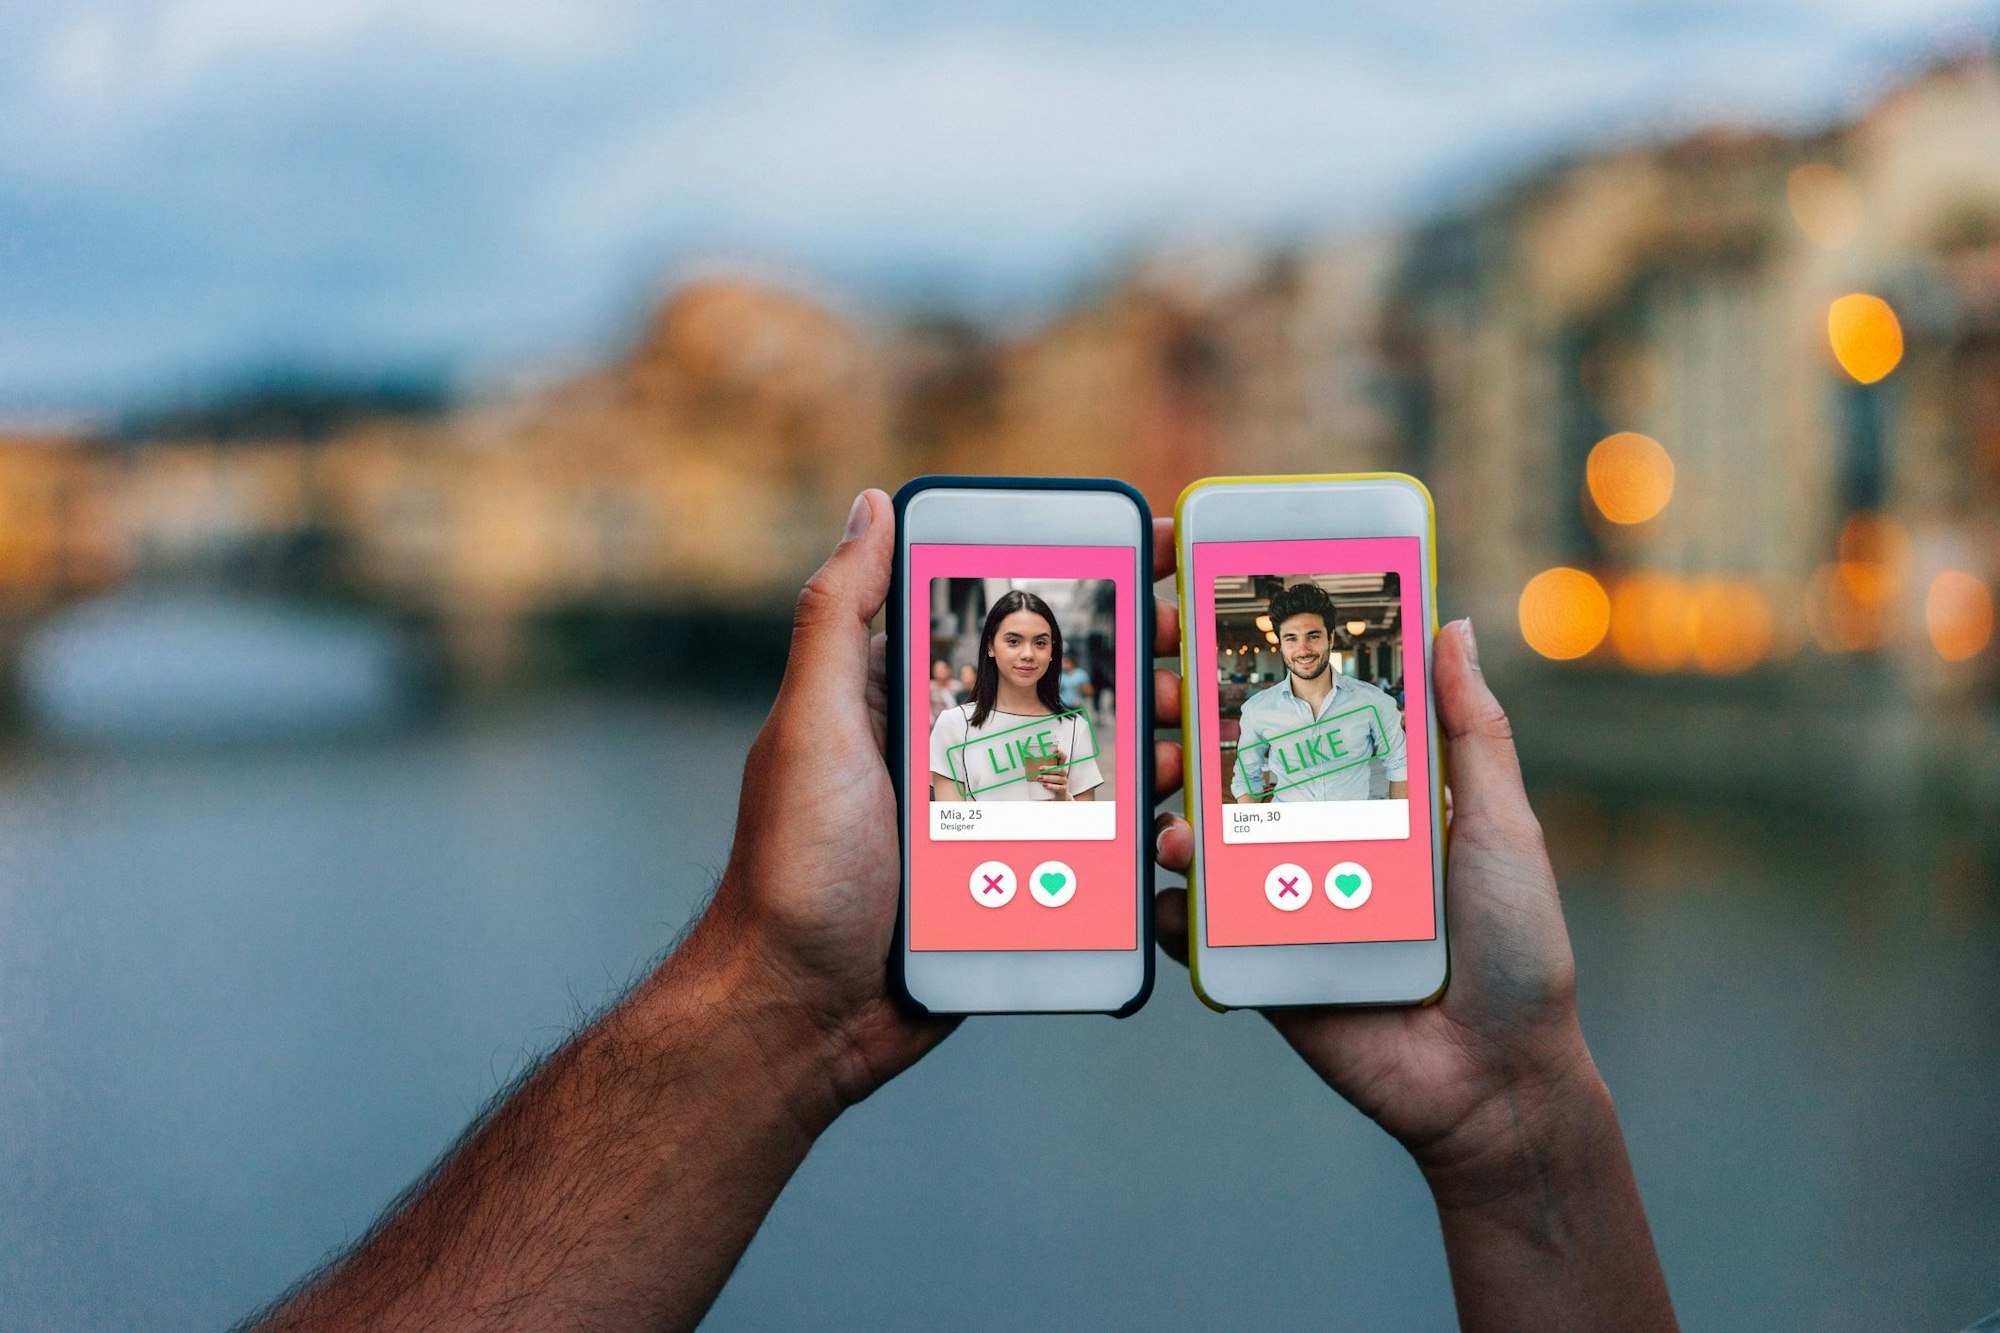 Zwei Hände, die Smartphones mit einer Online-Dating-App auf dem Bildschirm halten.